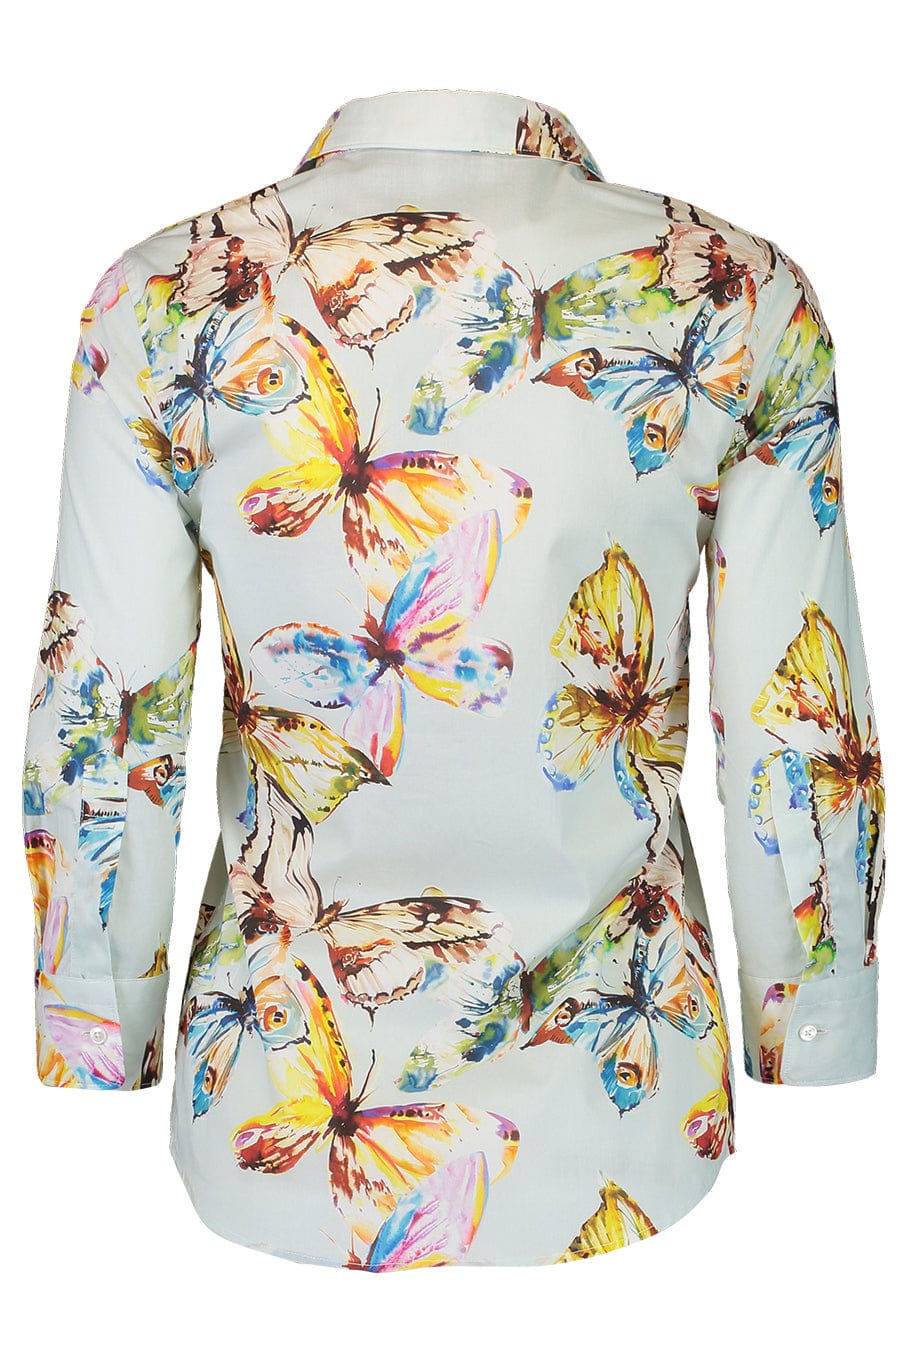 Marnina Butterfly Blouse CLOTHINGTOPBLOUSE SARA ROKA   